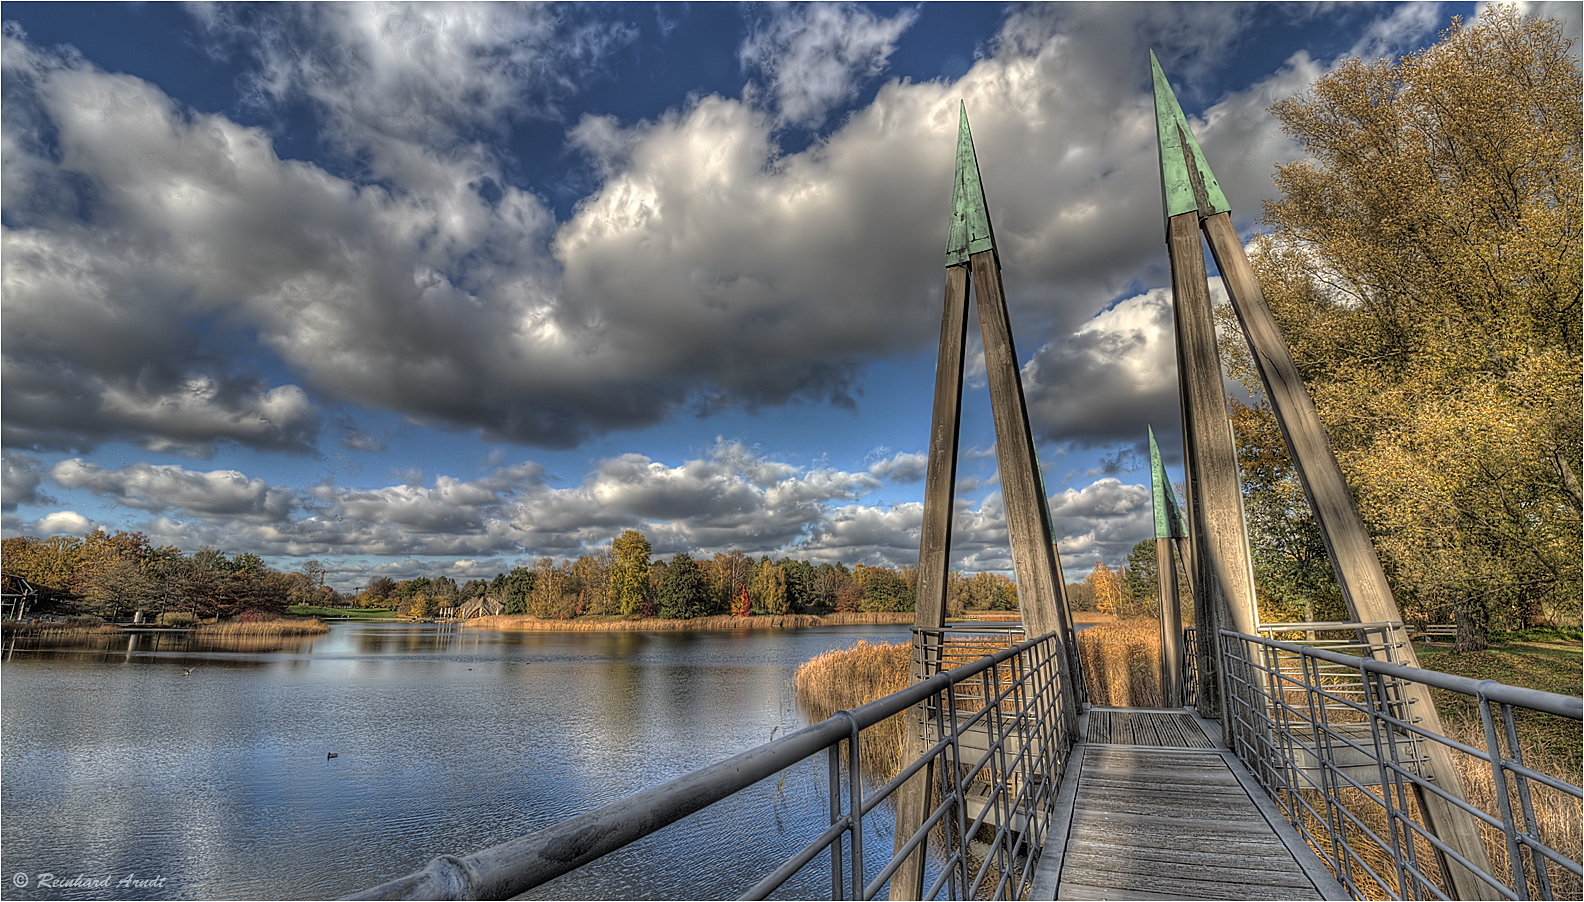 Britzer Garten im Herbst - Rhizomatische Brücke (2)